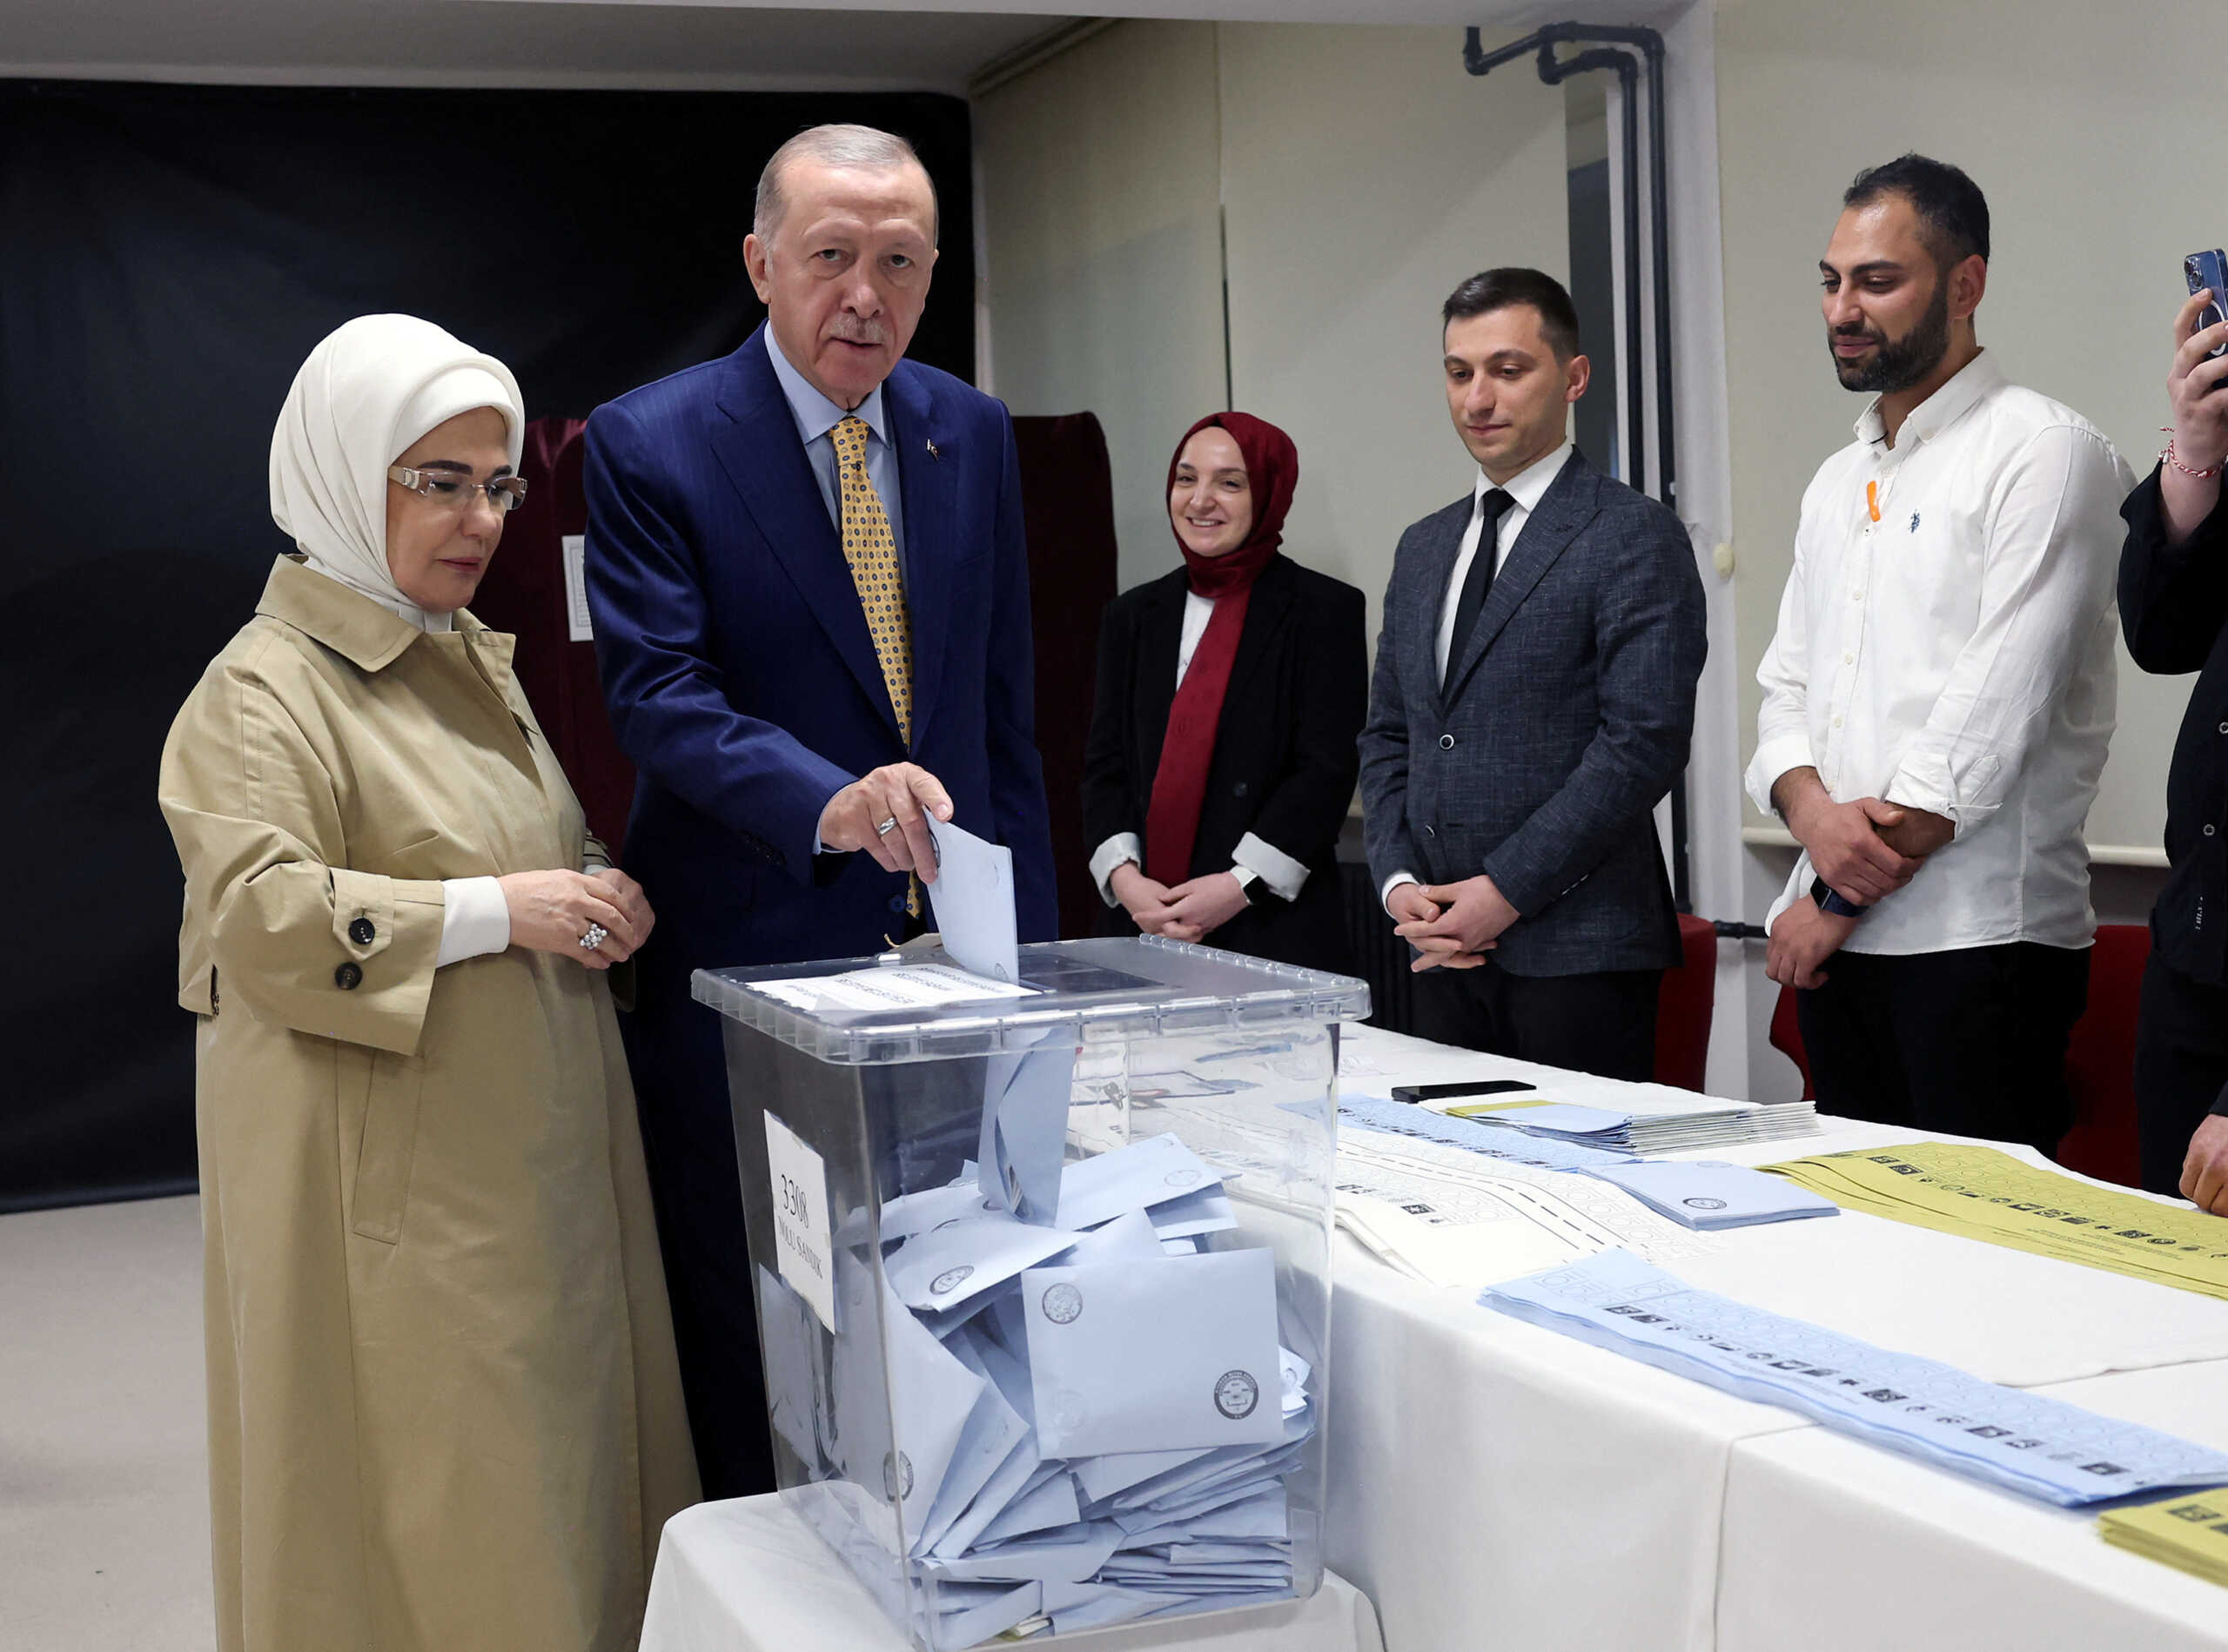 Εκλογές στην Τουρκία: Ψήφισε ο Ερντογάν – «Η αρχή μιας νέας εποχής»